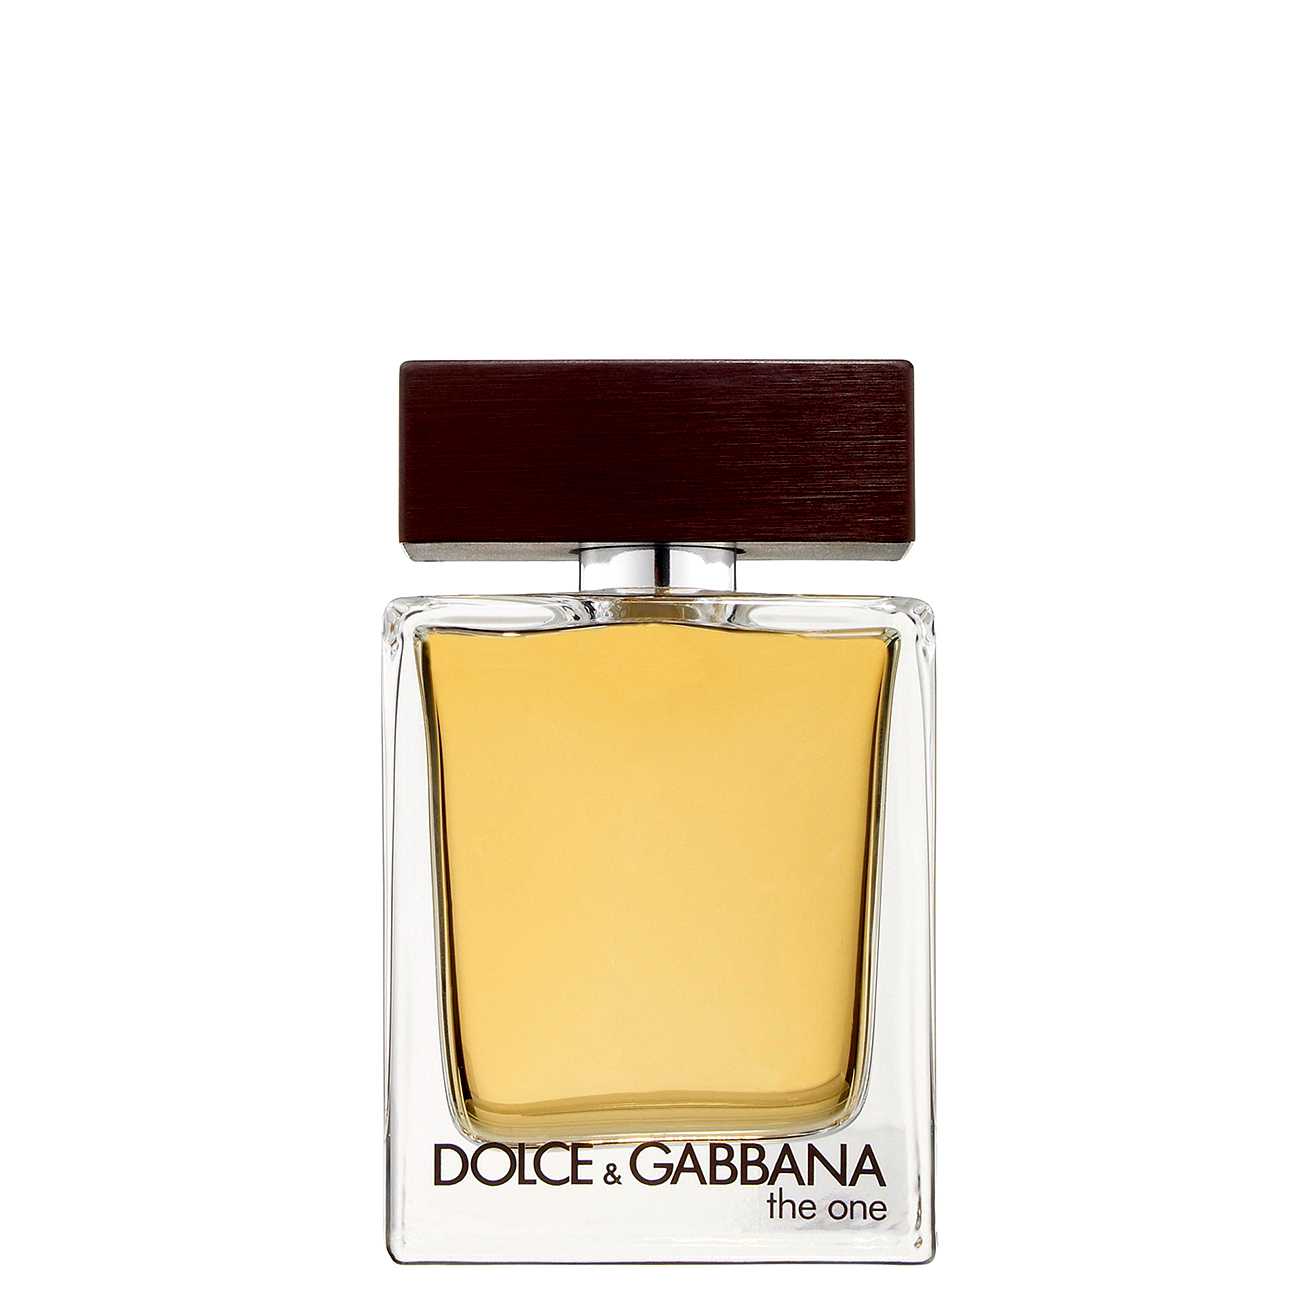 THE ONE 100 ml Dolce & Gabbana bestvalue.eu imagine noua